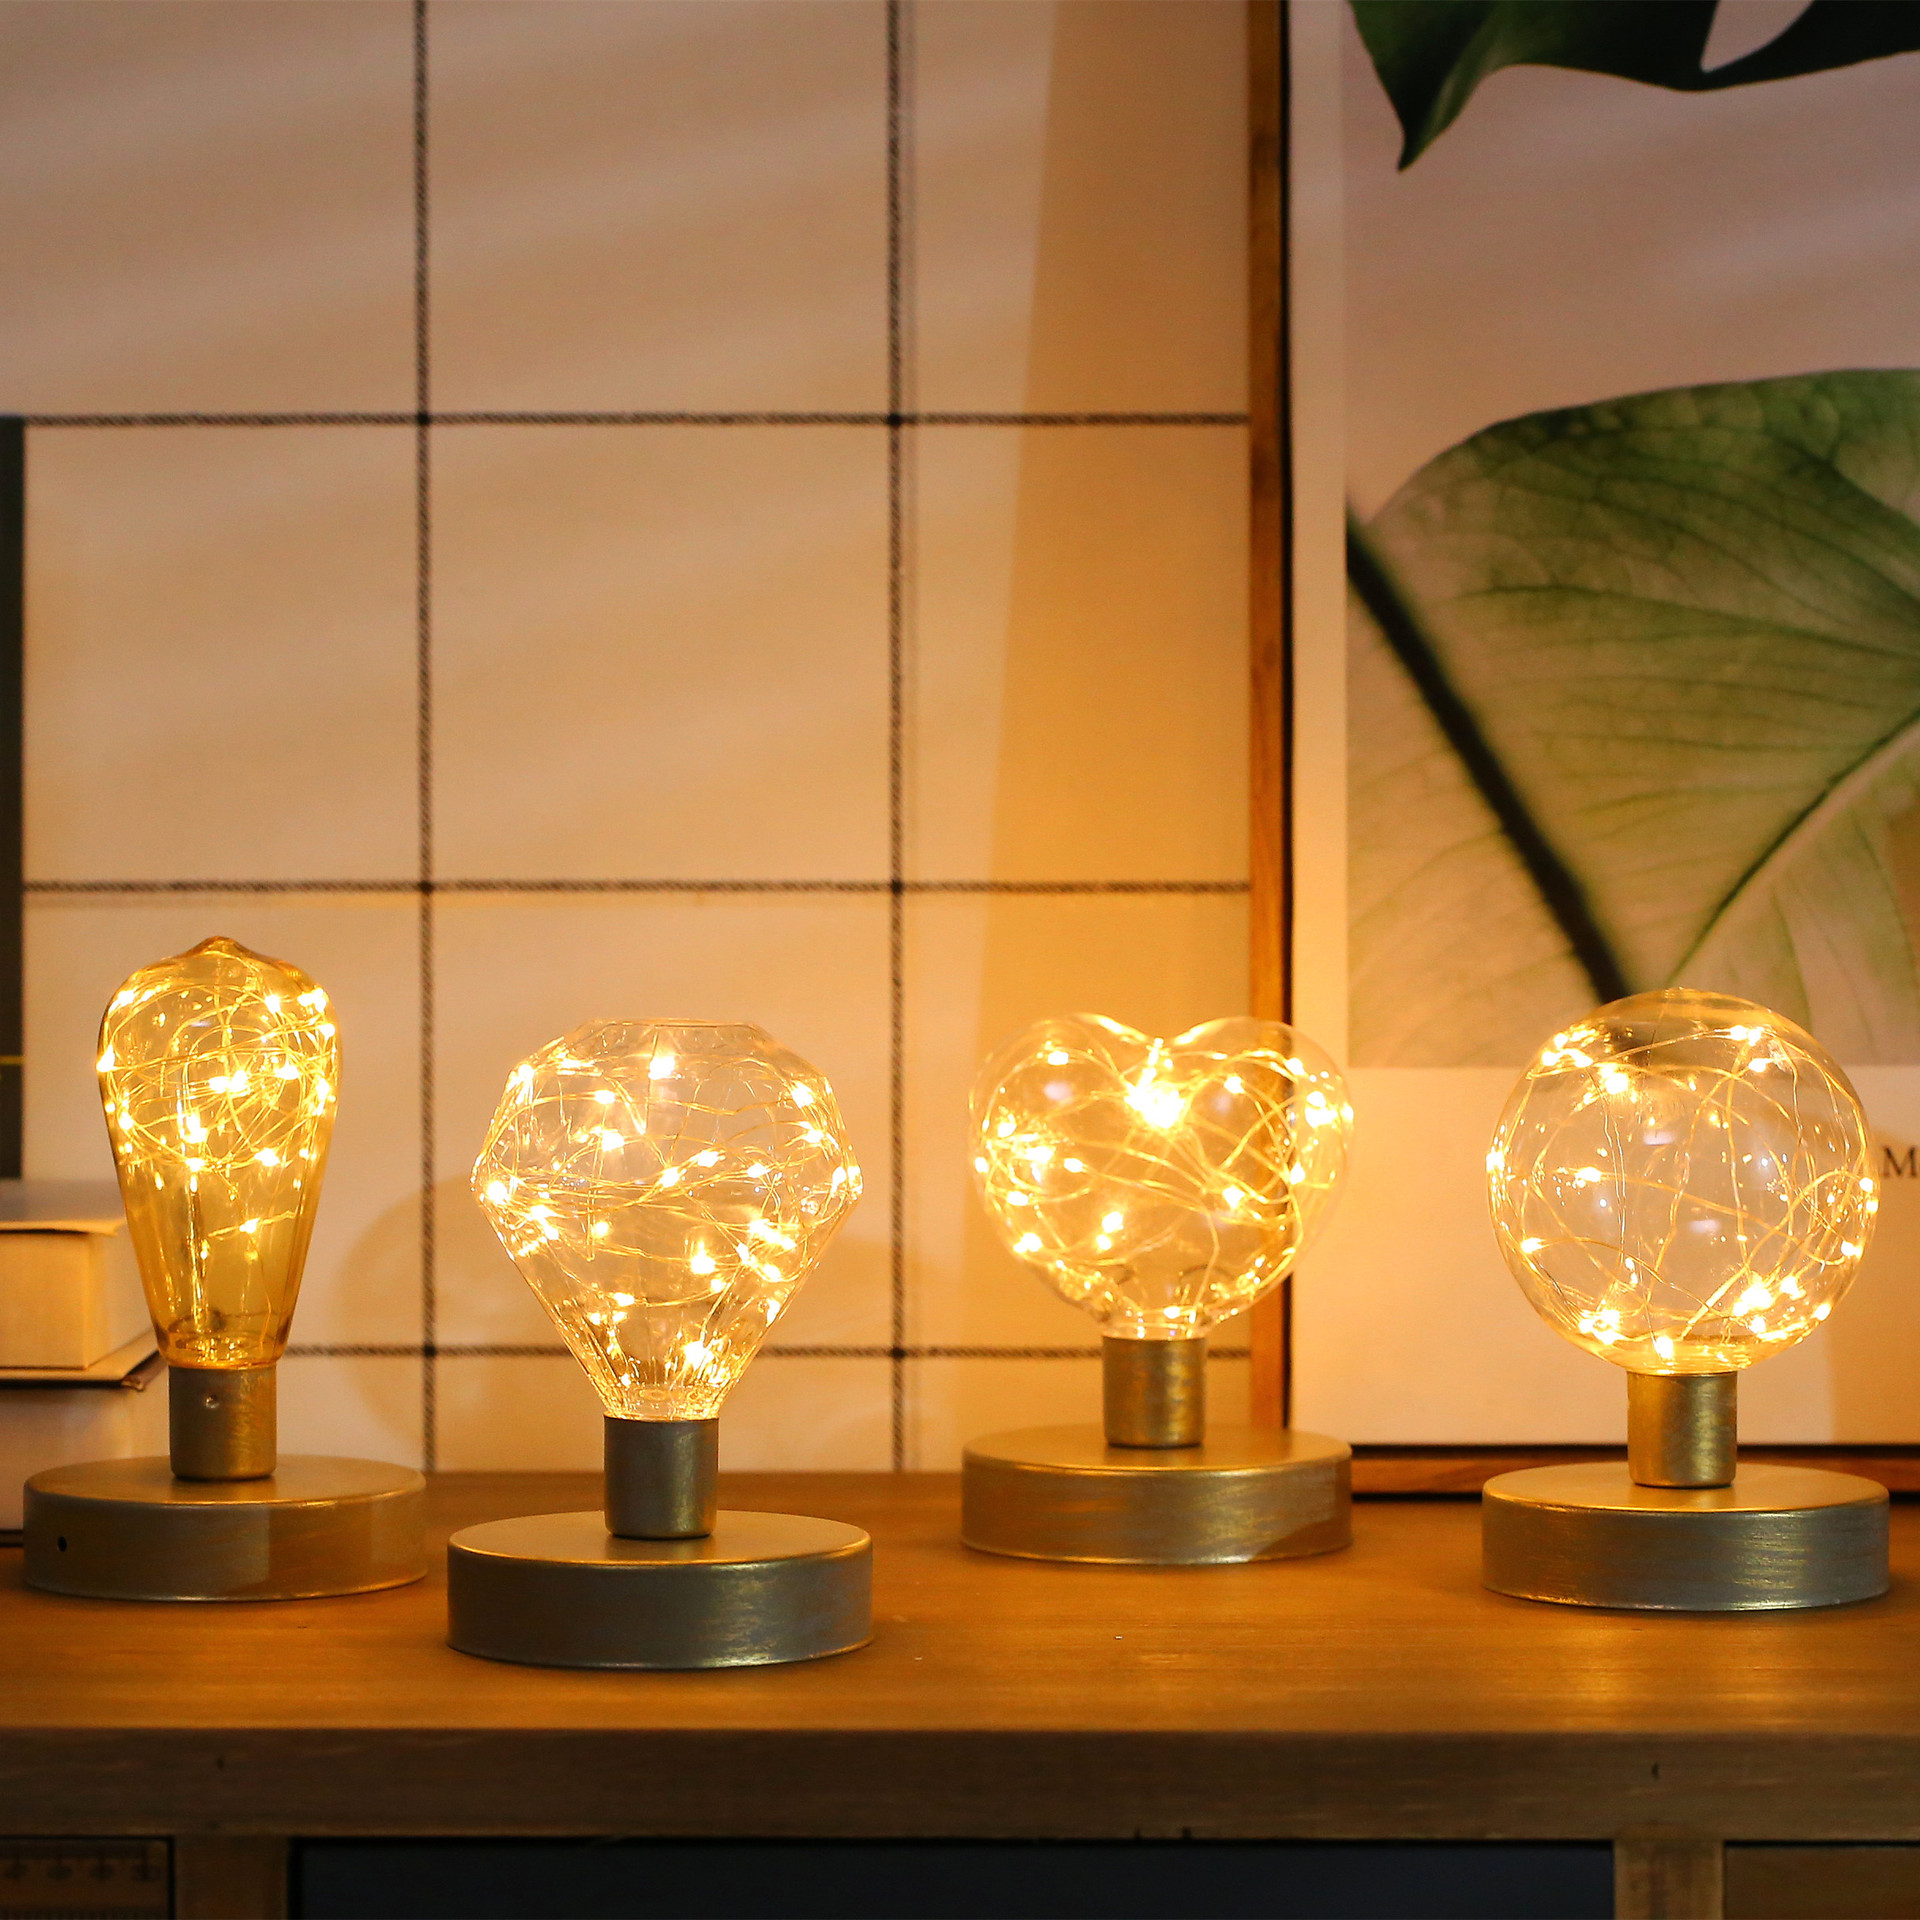 Lampe cocooning en métal créative et portative